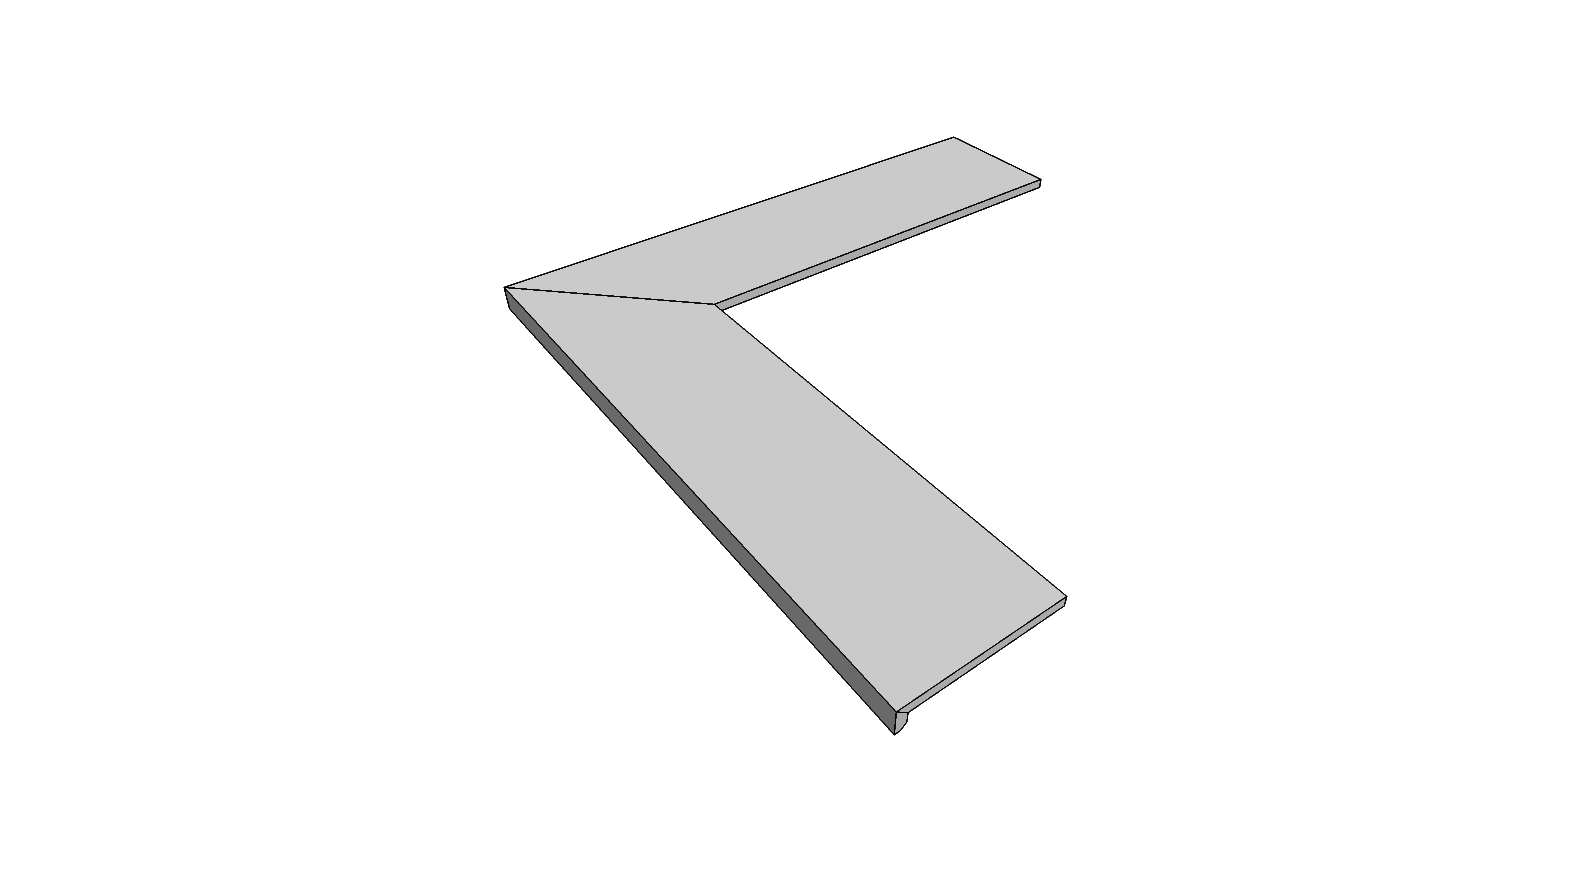 L-rand randtegel aflopend gelijmd volledige buitenhoek (2 stuks) <span style="white-space:nowrap;">60x120x5 cm</span>   <span style="white-space:nowrap;">ép. 20mm</span>